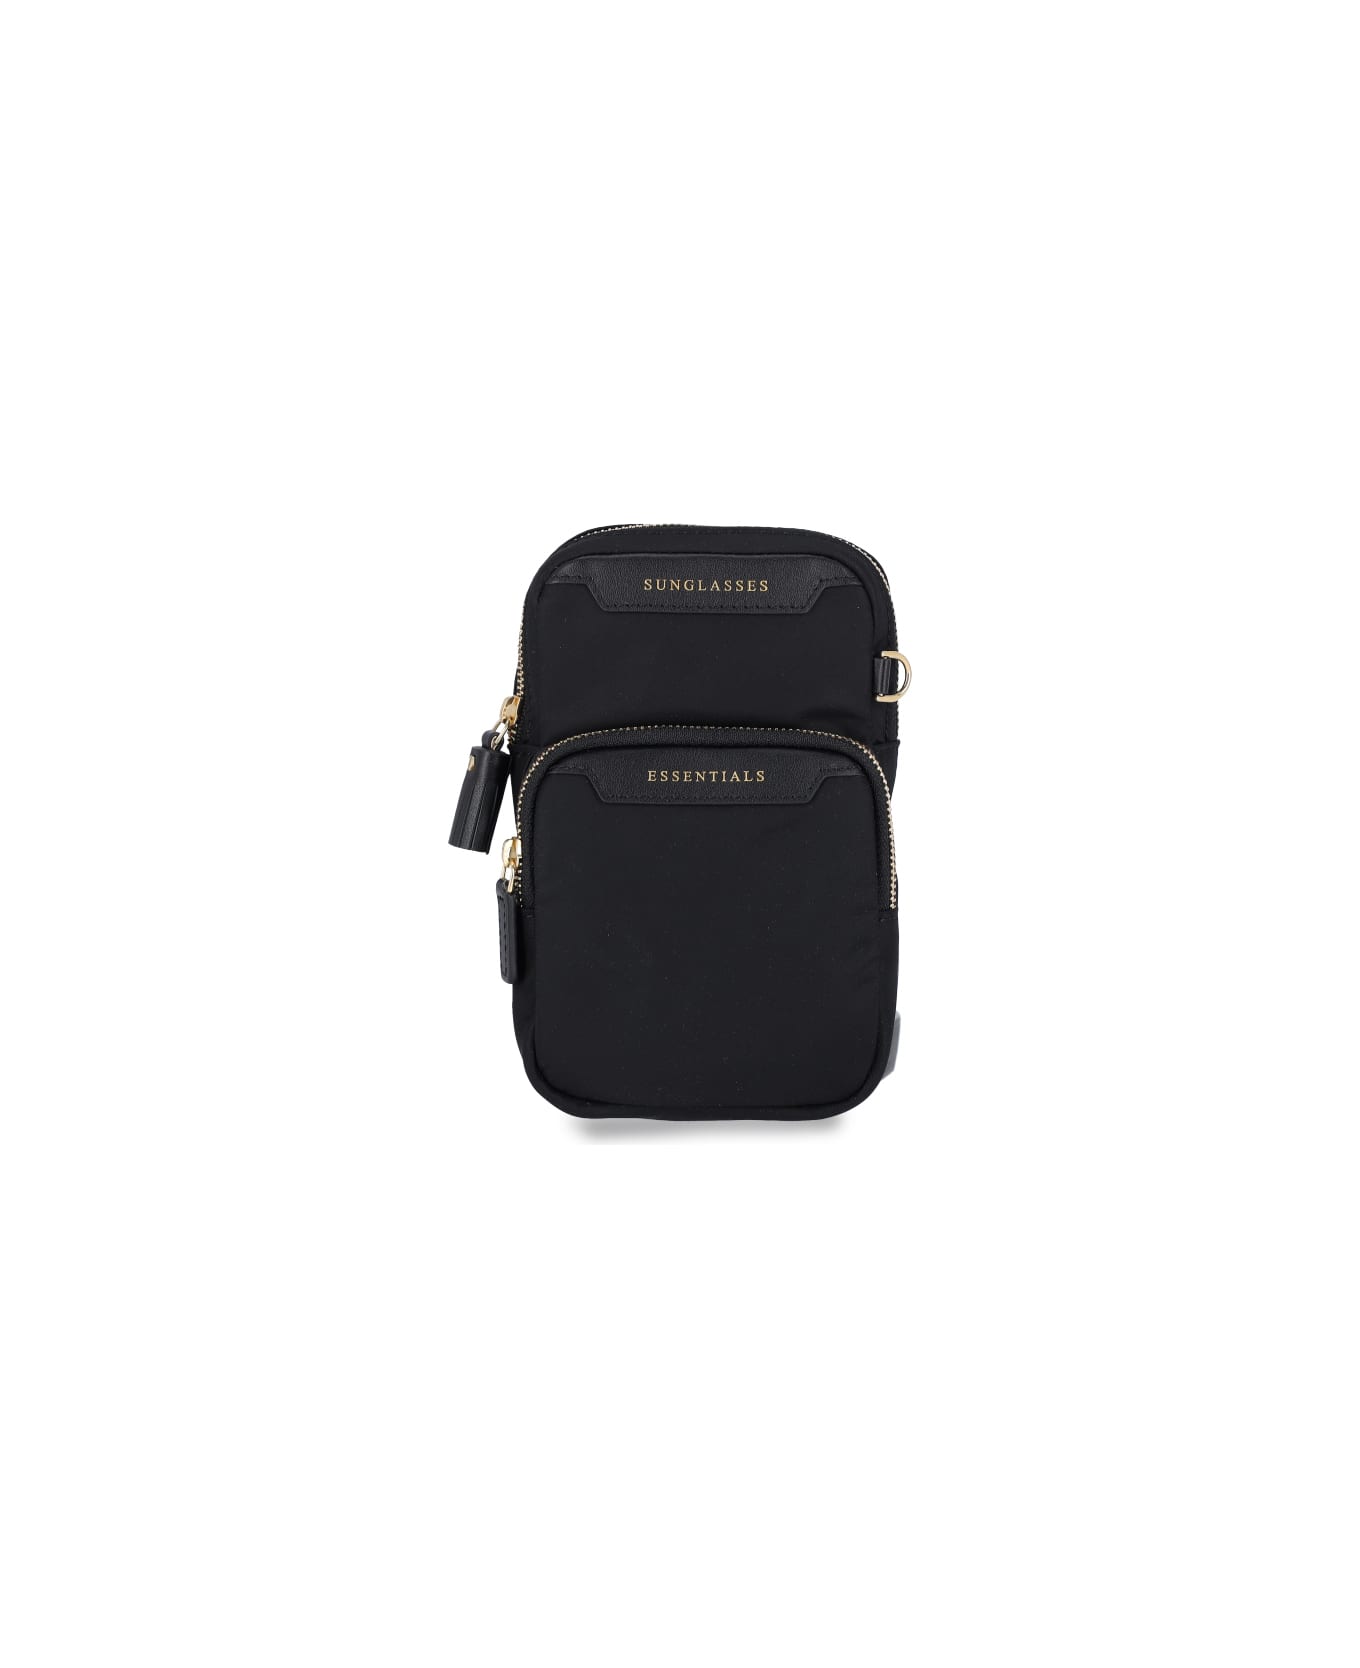 Anya Hindmarch 'essentials' Shoulder Bag - Black  